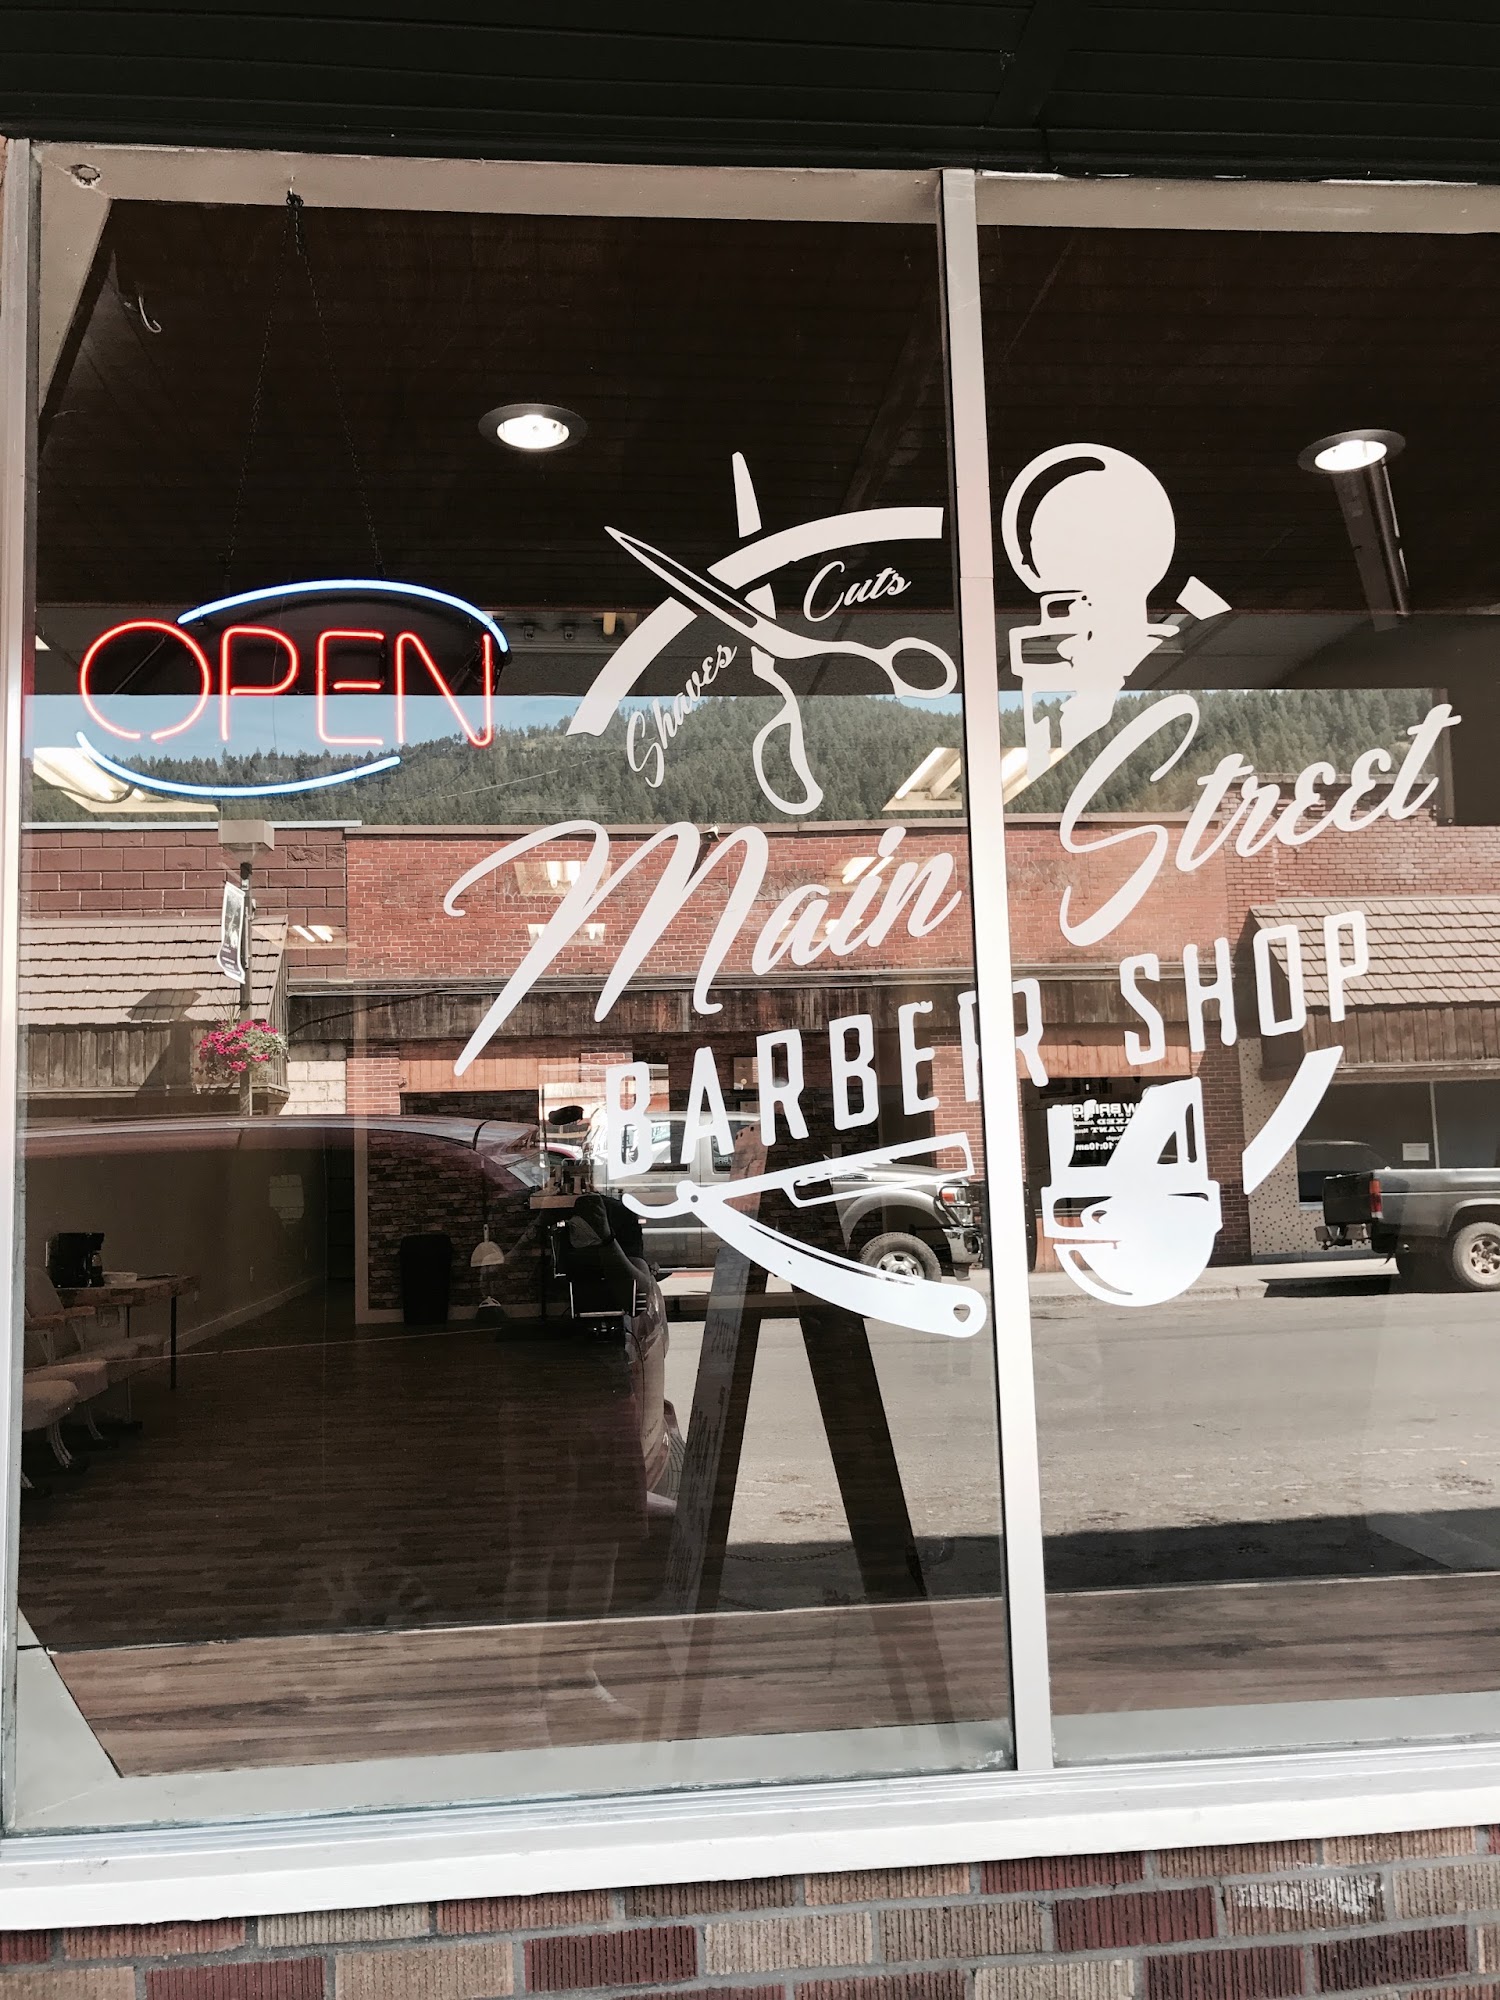 Main Street Barber Shop 221 Main St, Orofino Idaho 83544